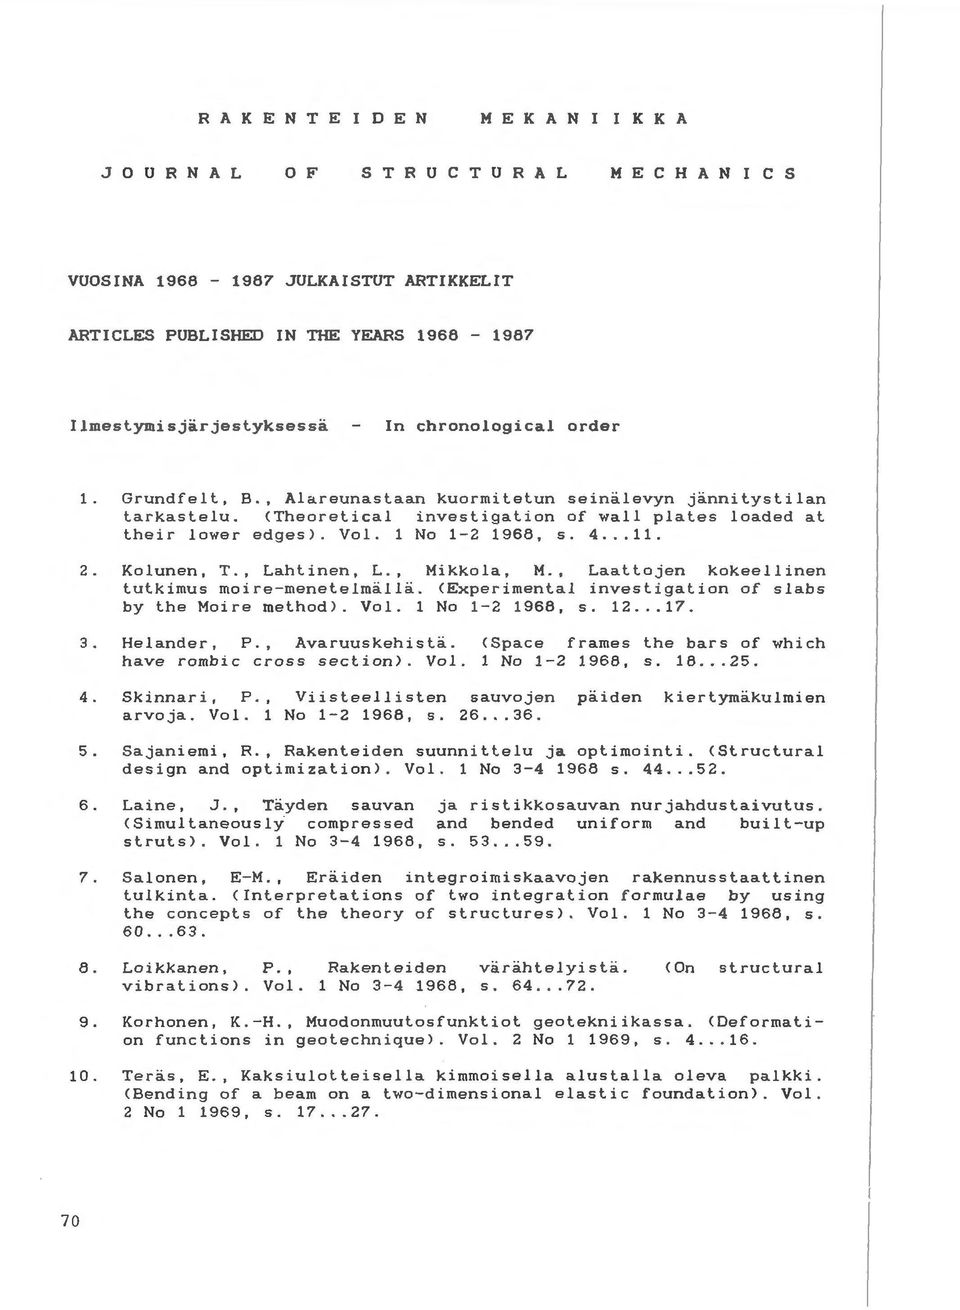 Vol. 1 No 1-2 1968, s. 4... 11. 2. Kolunen, T., Lahtinen, L., Mikkola, M., Laattojen kokeellinen tutkimus moire-menetelmalla. <Experimental investigation of slabs by the Moire method). Vol.